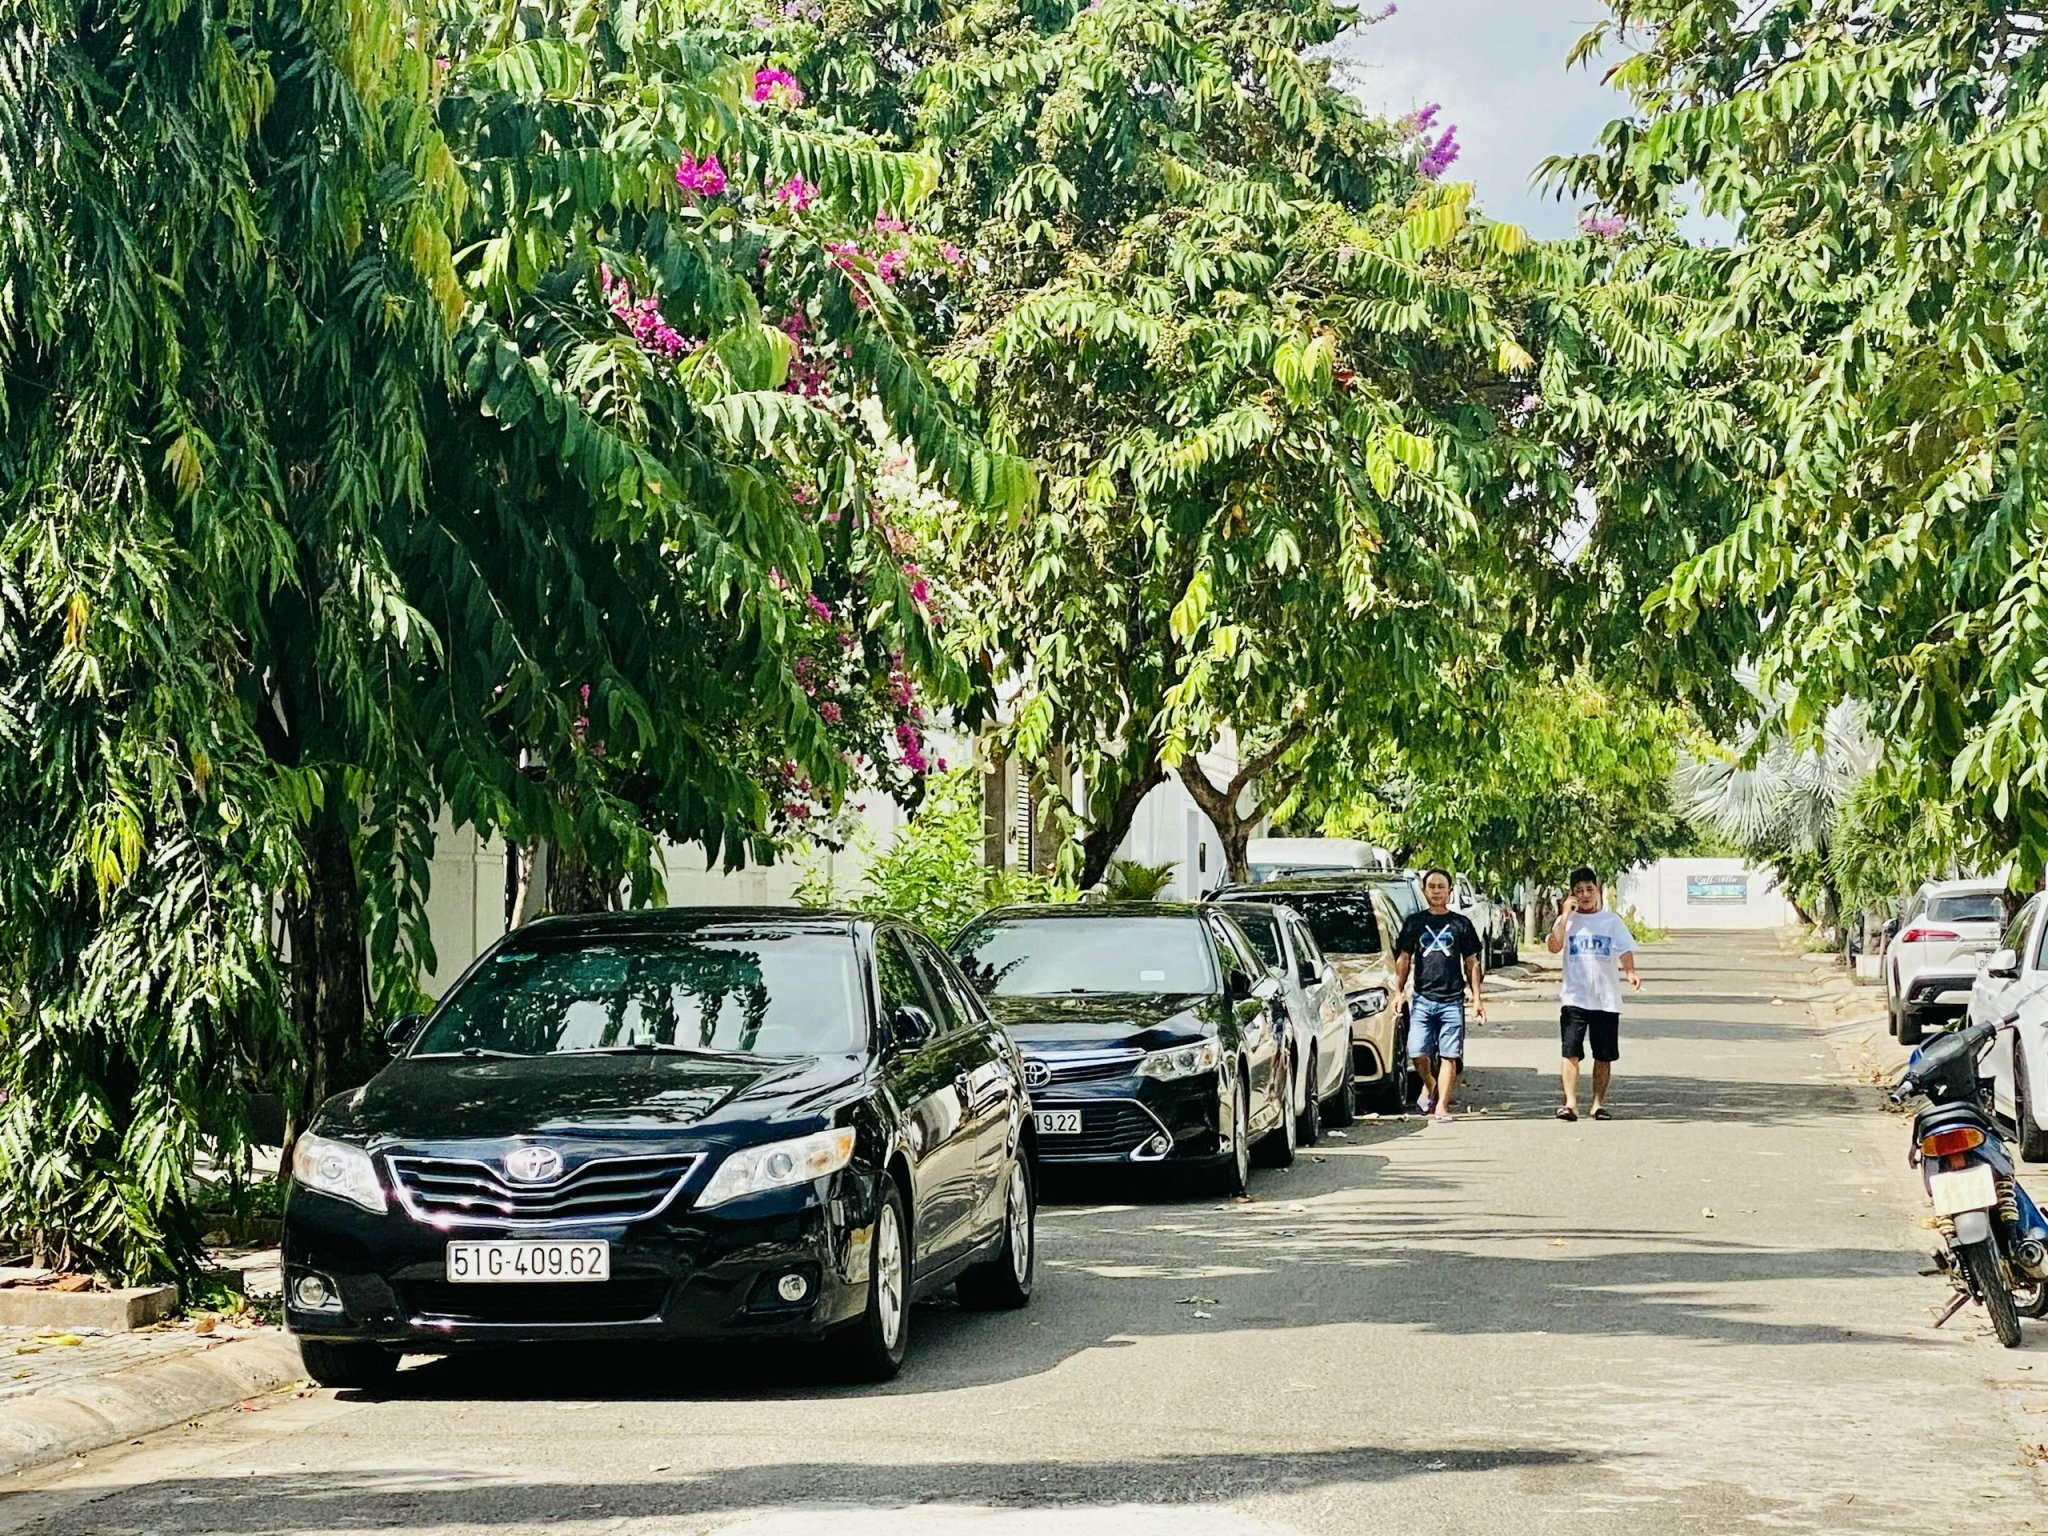 Xe khách du lịch đậu đầy dọc đường Thùy Dương 3 (khu biệt thự Thanh Bình, phường 10) ảnh hưởng đến việc lưu thông xe cộ của người dân sống trong khu dân cư này.